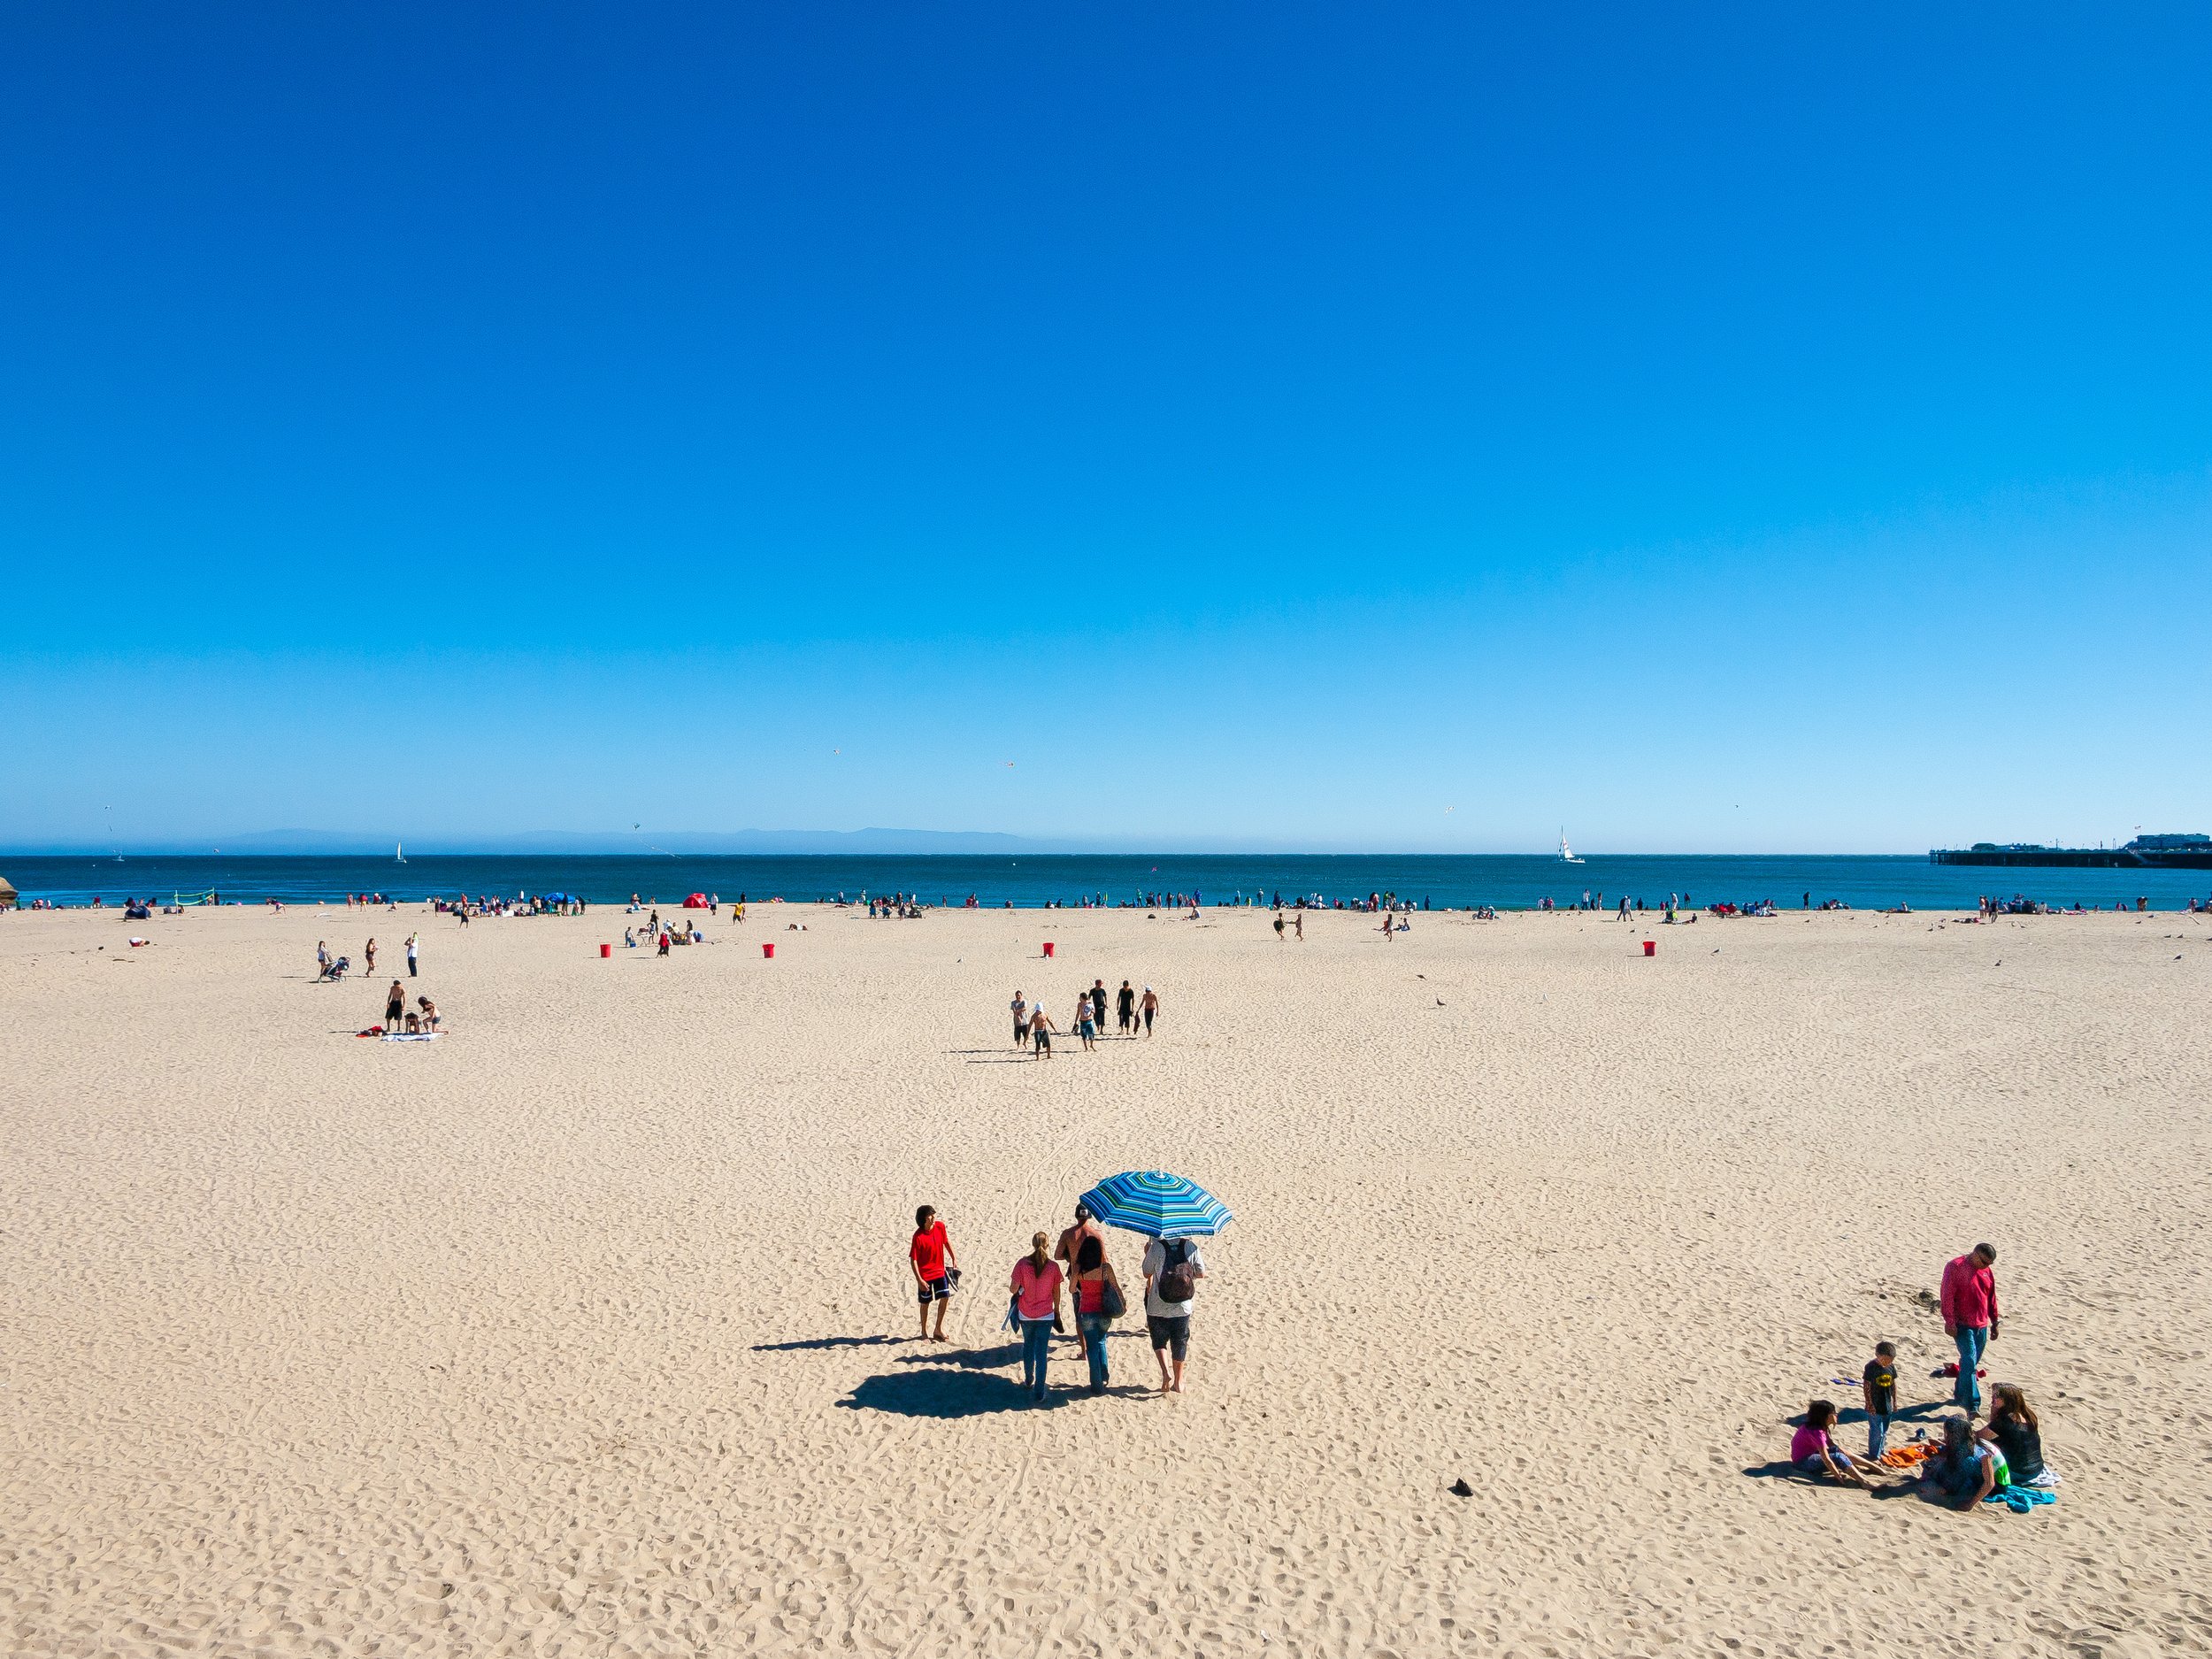 Beach View, Santa Cruz, 2013